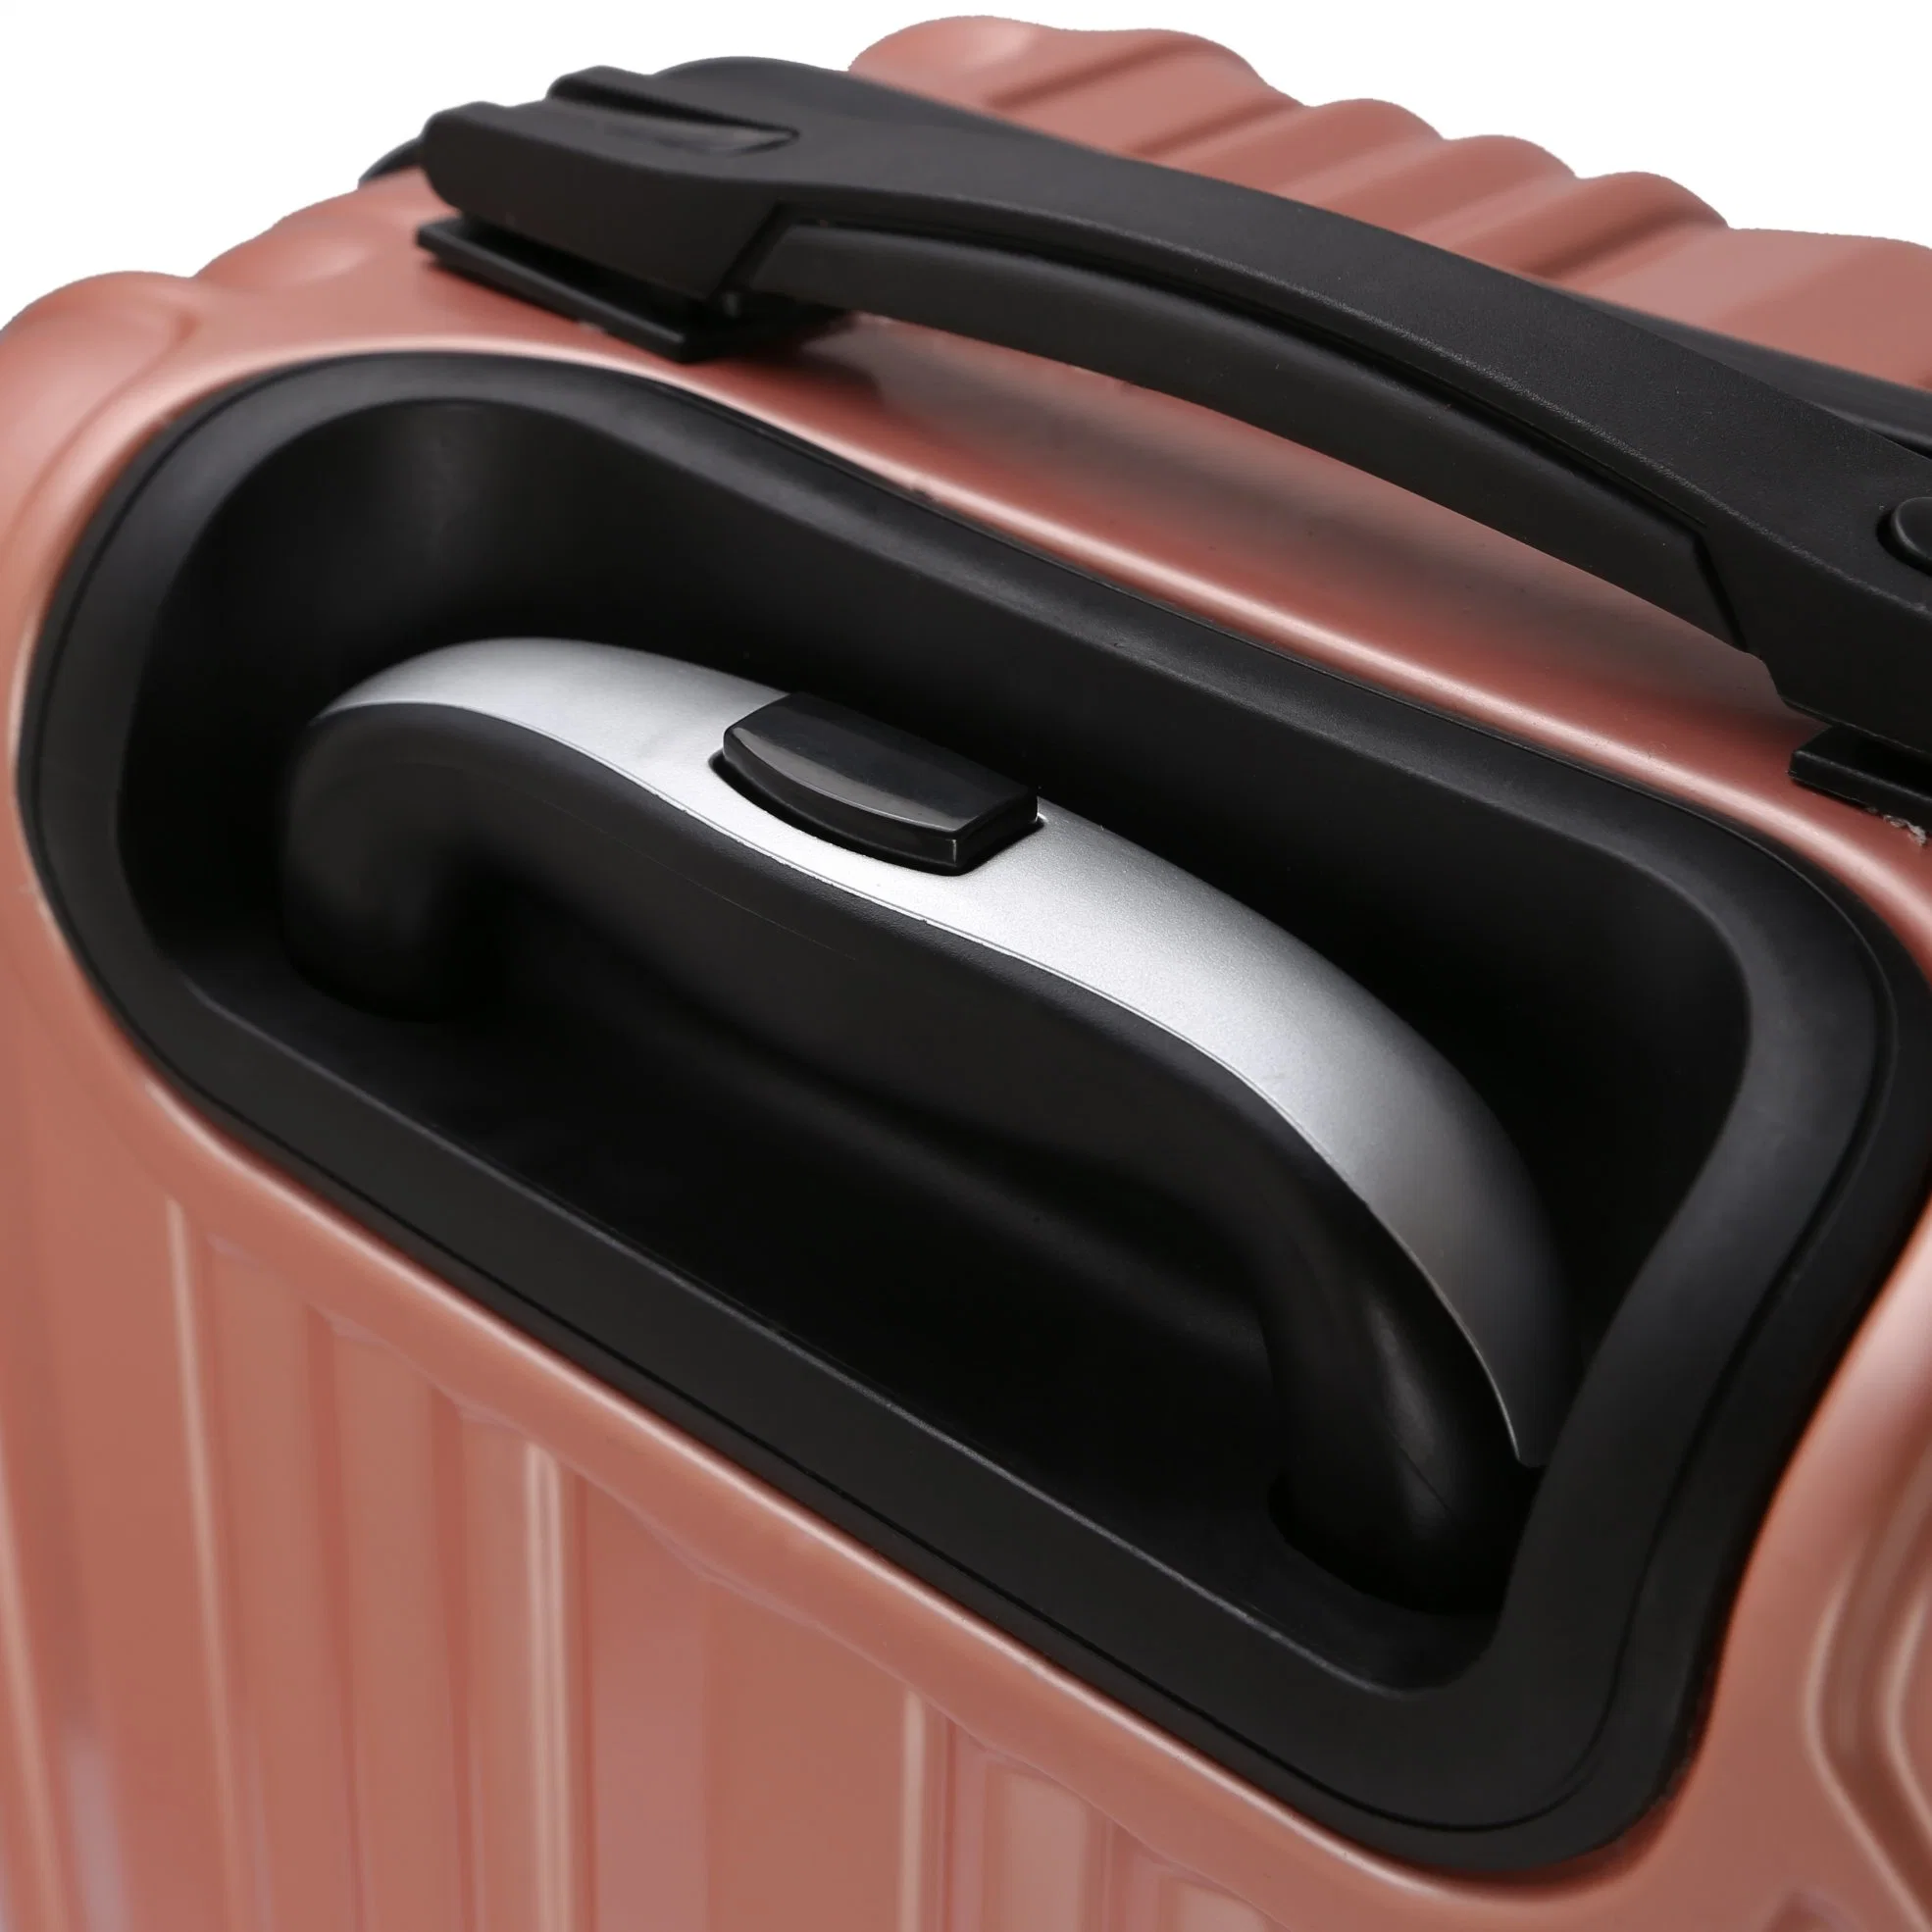 OEM tragen auf PC Reisekoffer Gepäcktaschen Trolley-Fällen Xhp076